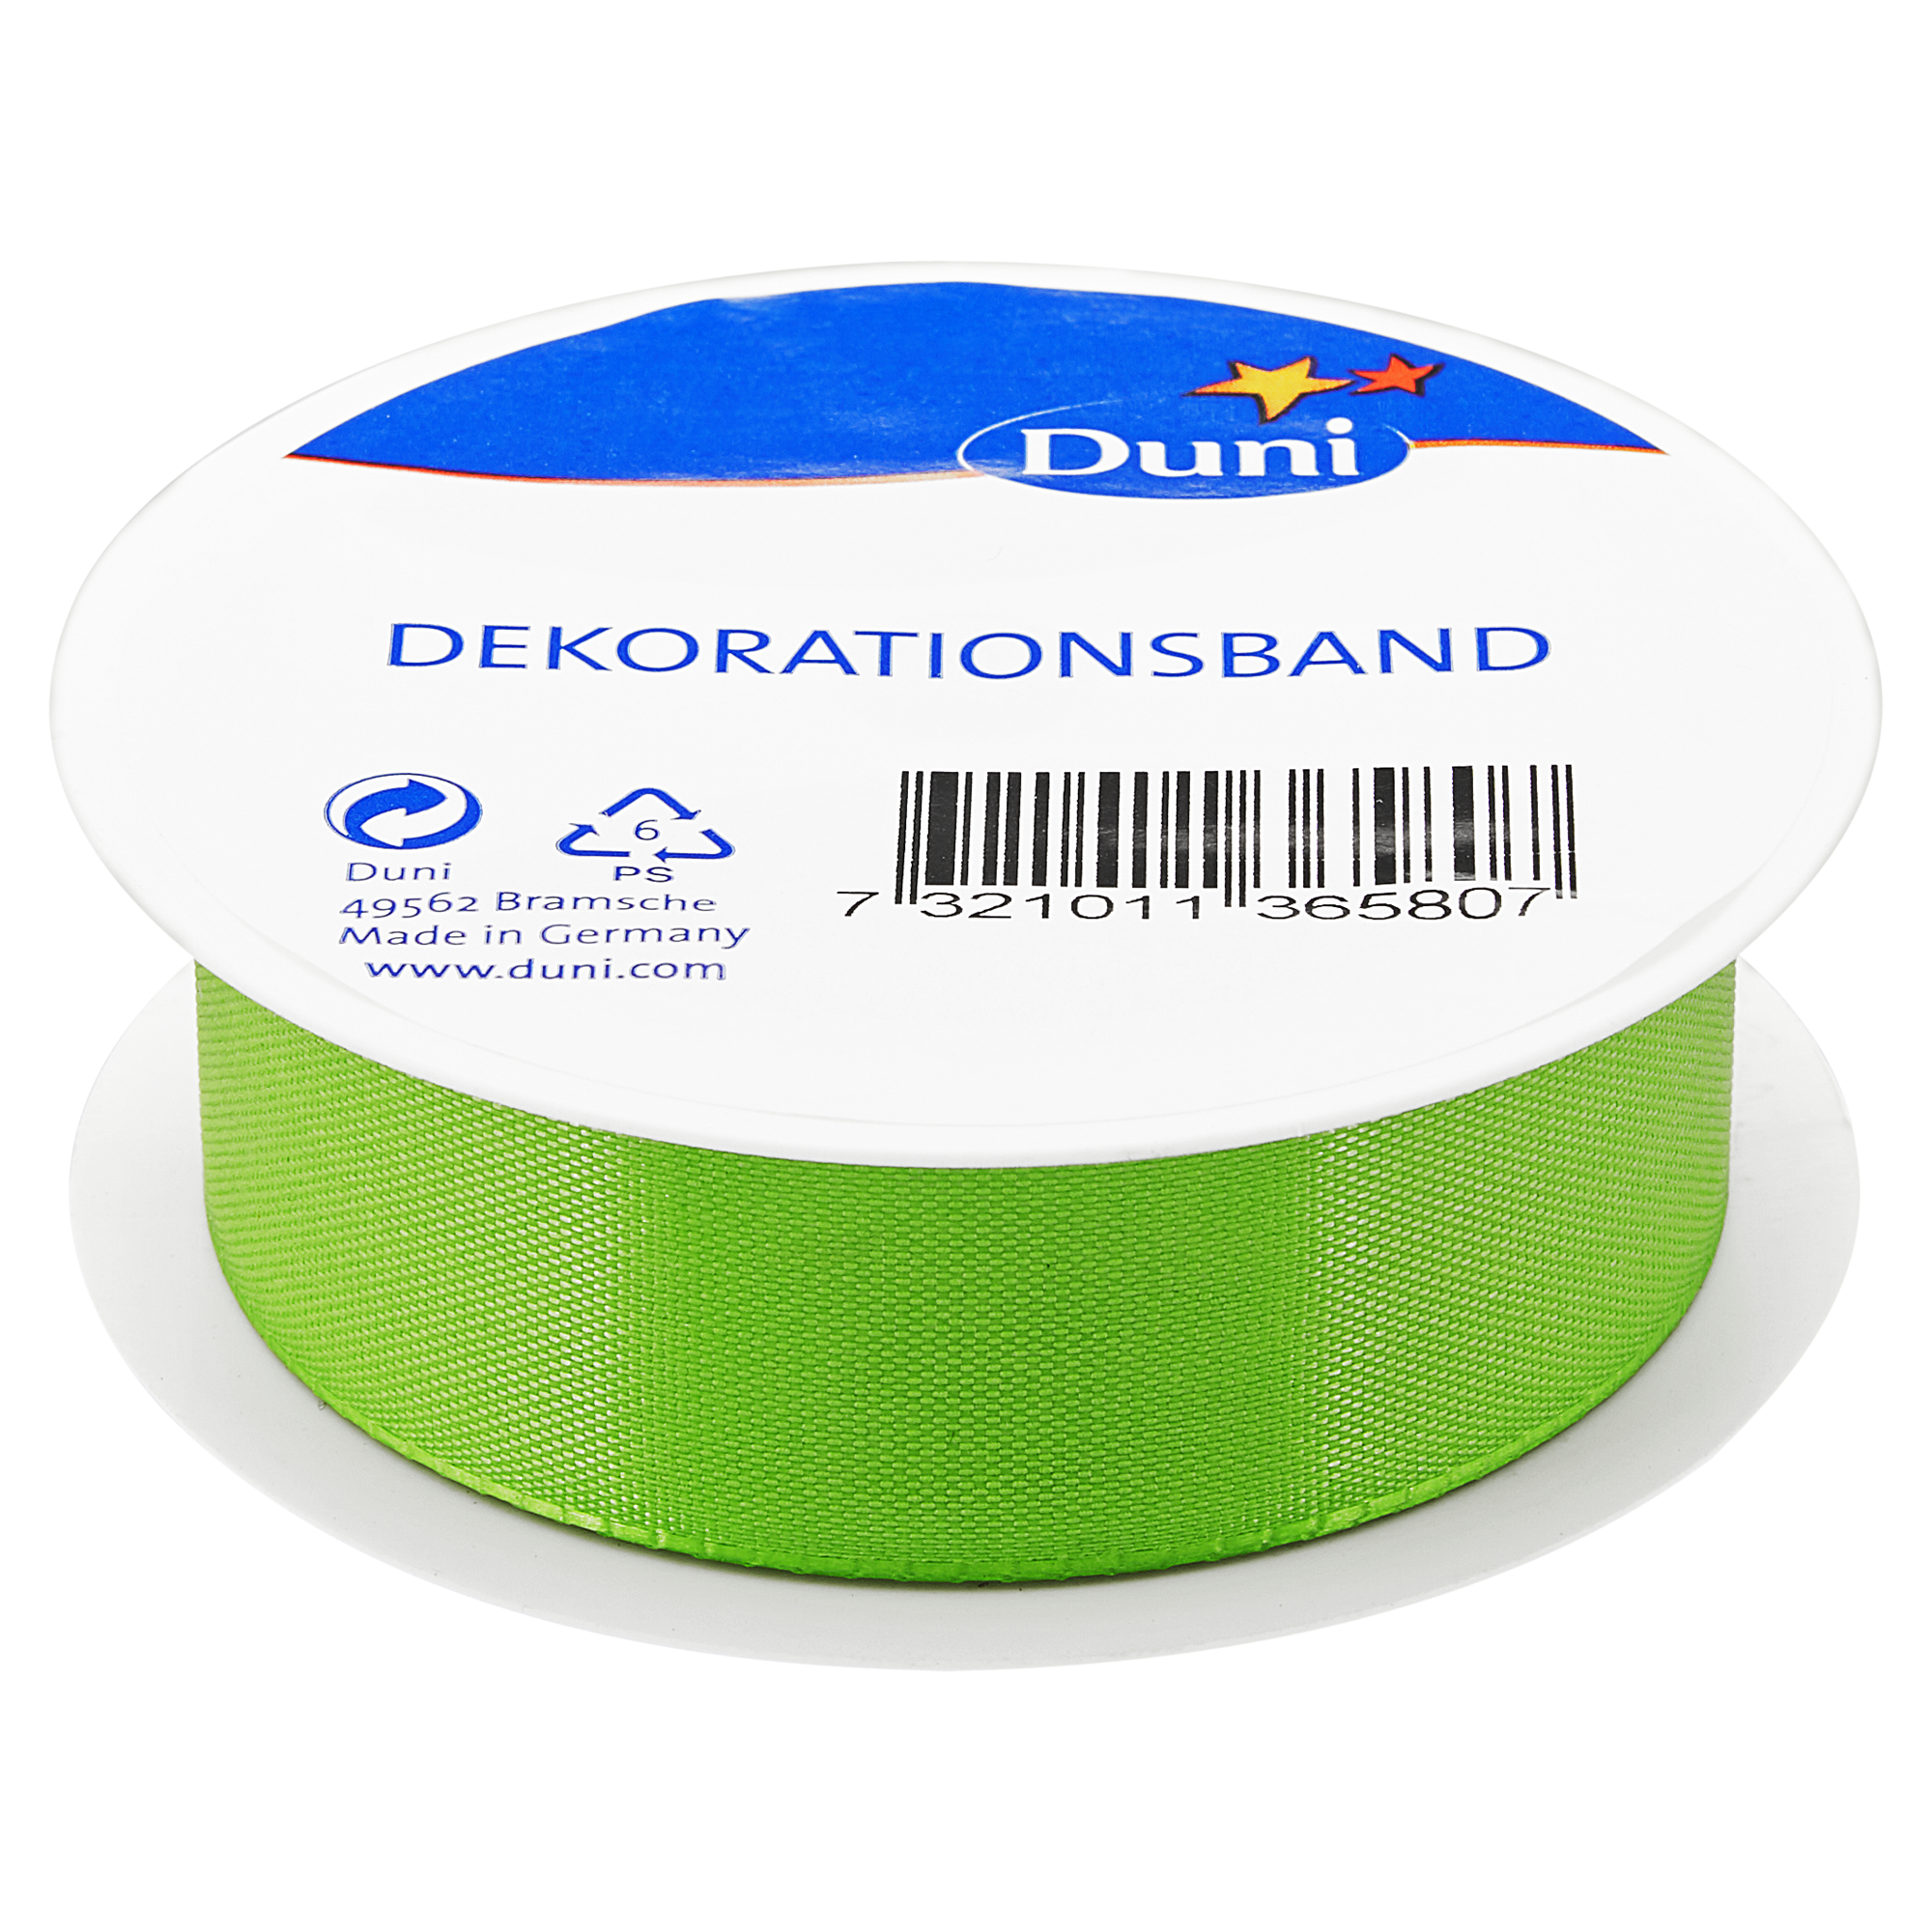 Dekorationsband grün 3 m x 2,5 cm + product picture